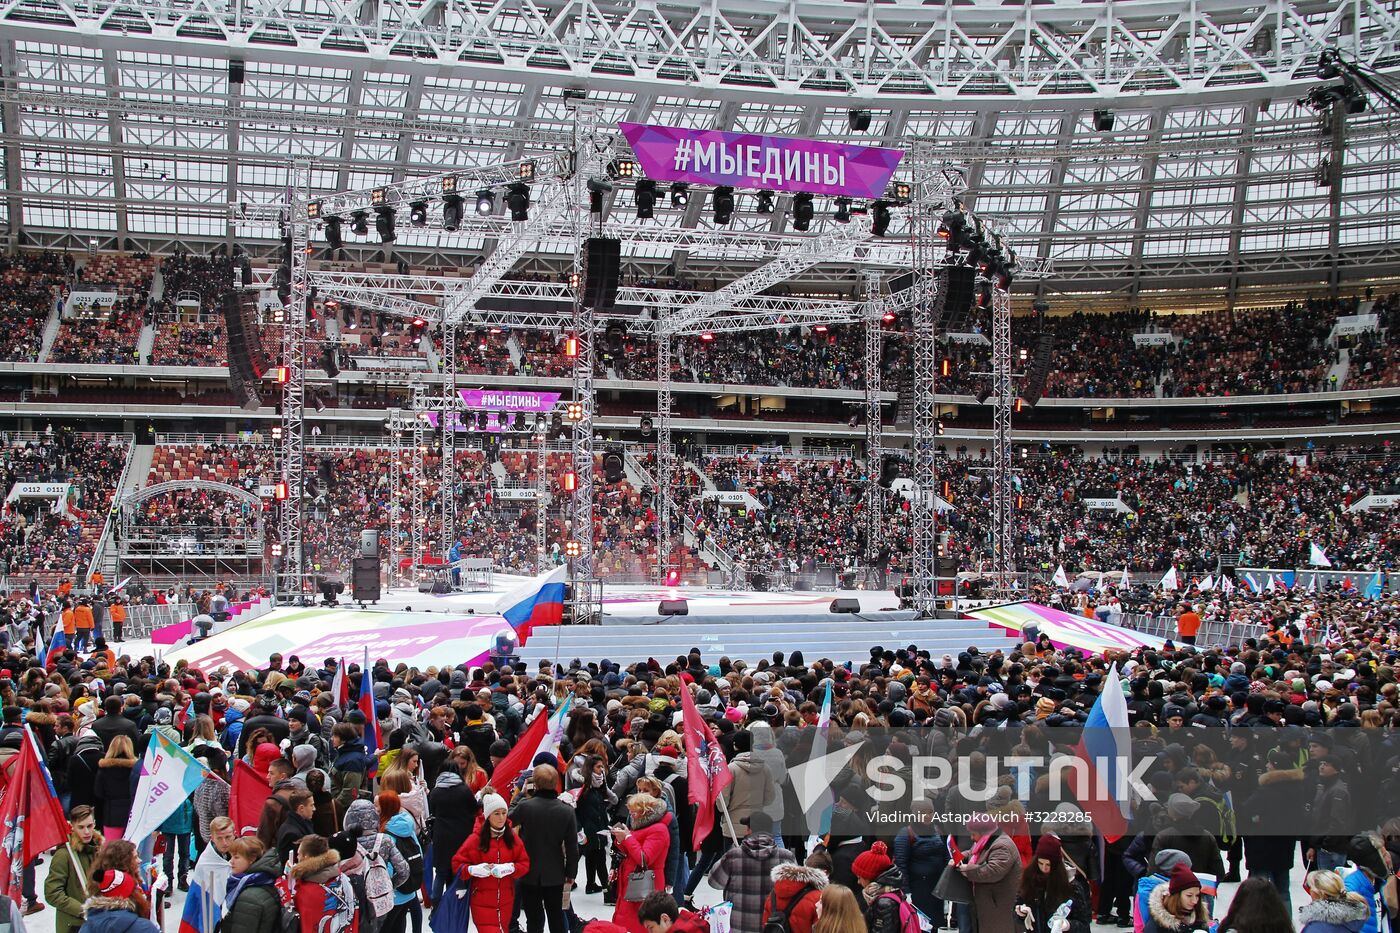 Russia Unites concert